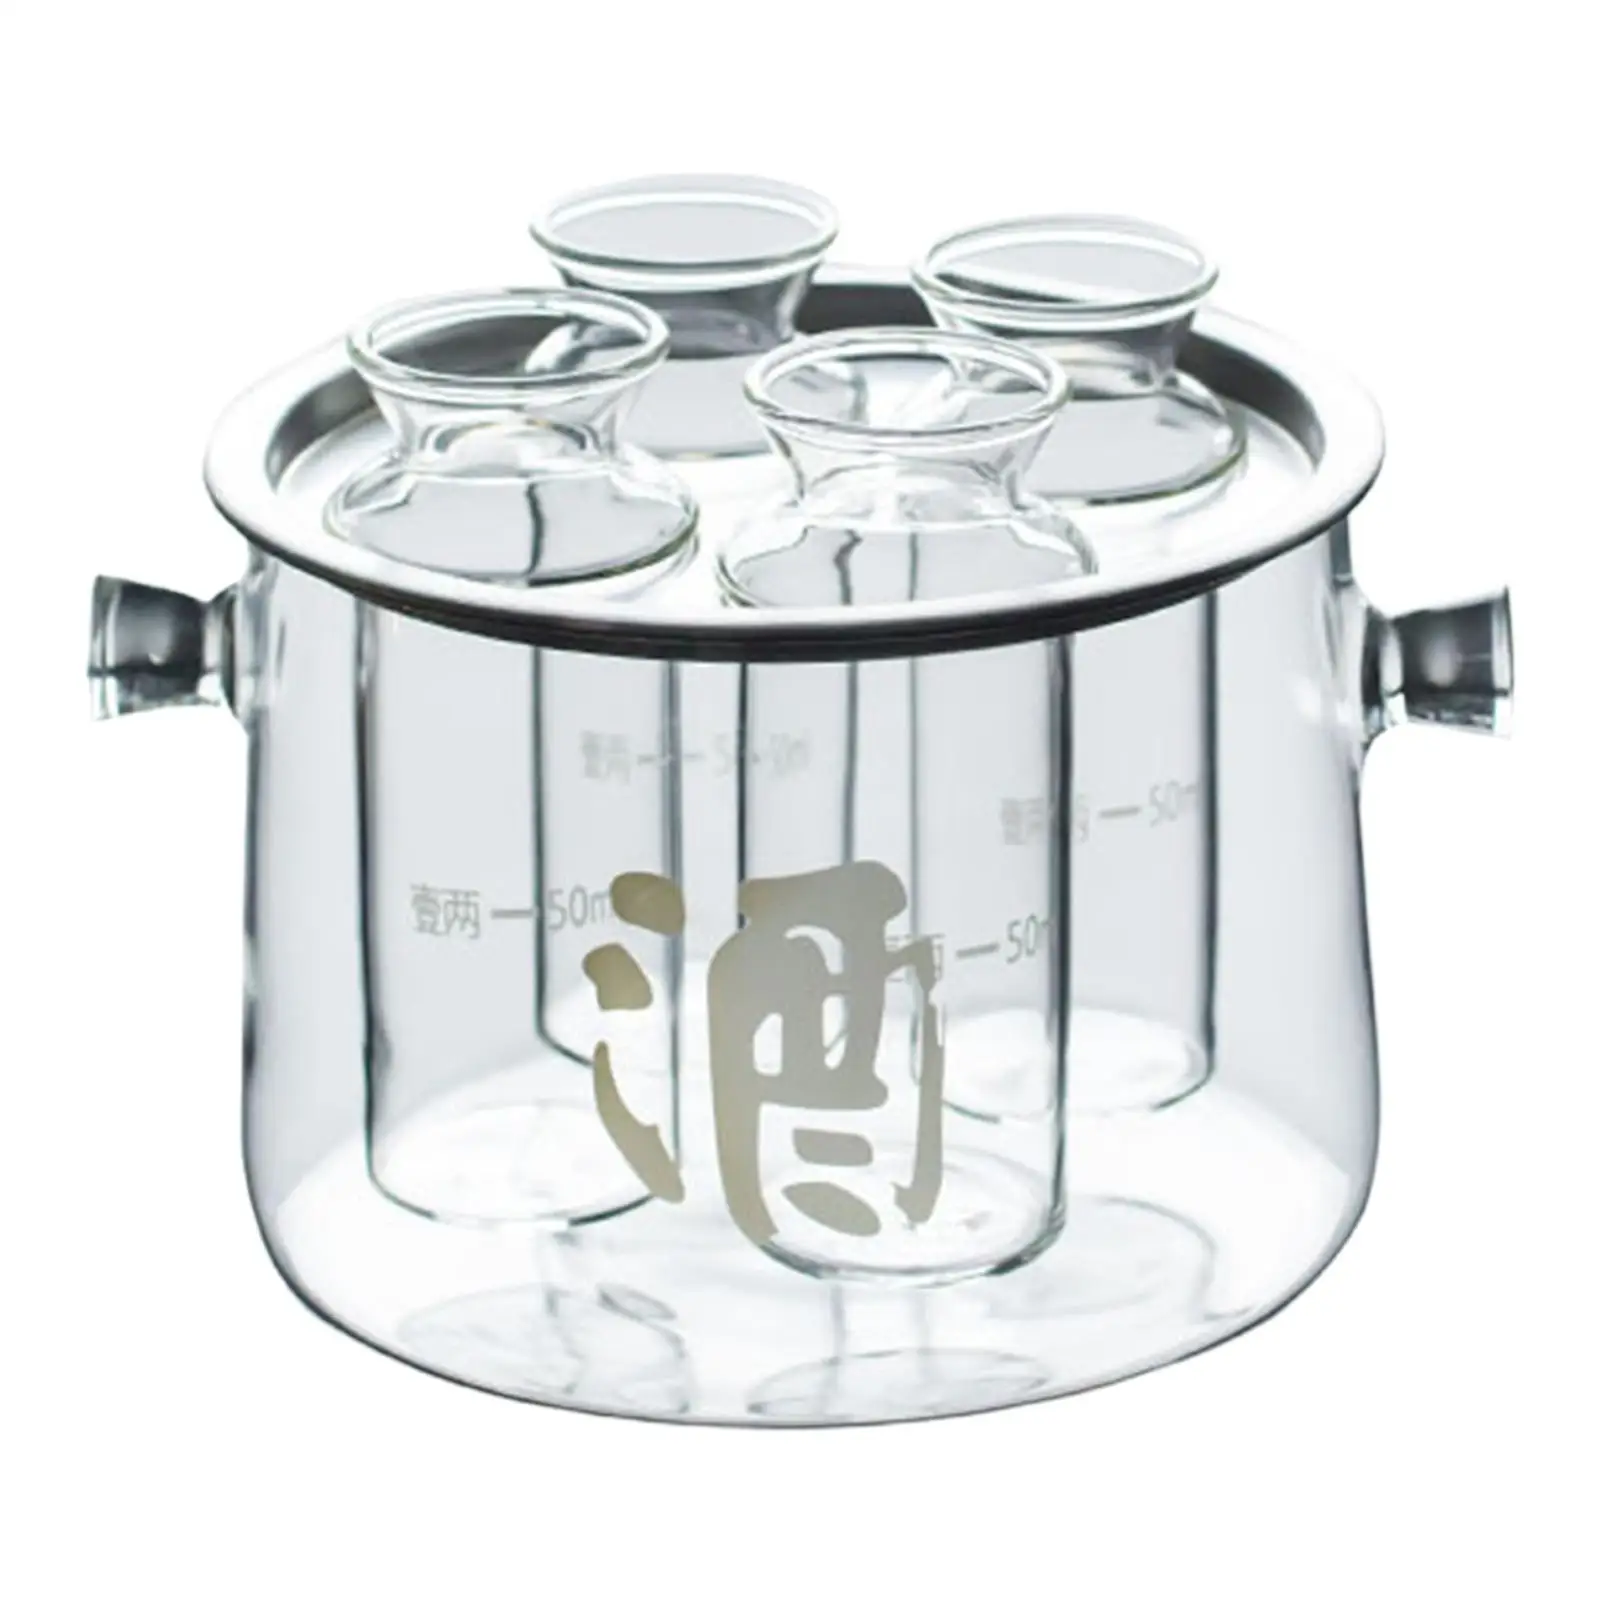 Sake Pot Set Gift Japanese Transparent Cold Sake Glasses Sake Carafe Bottle for Housewarming Hotel Birthday Dining Table Wedding